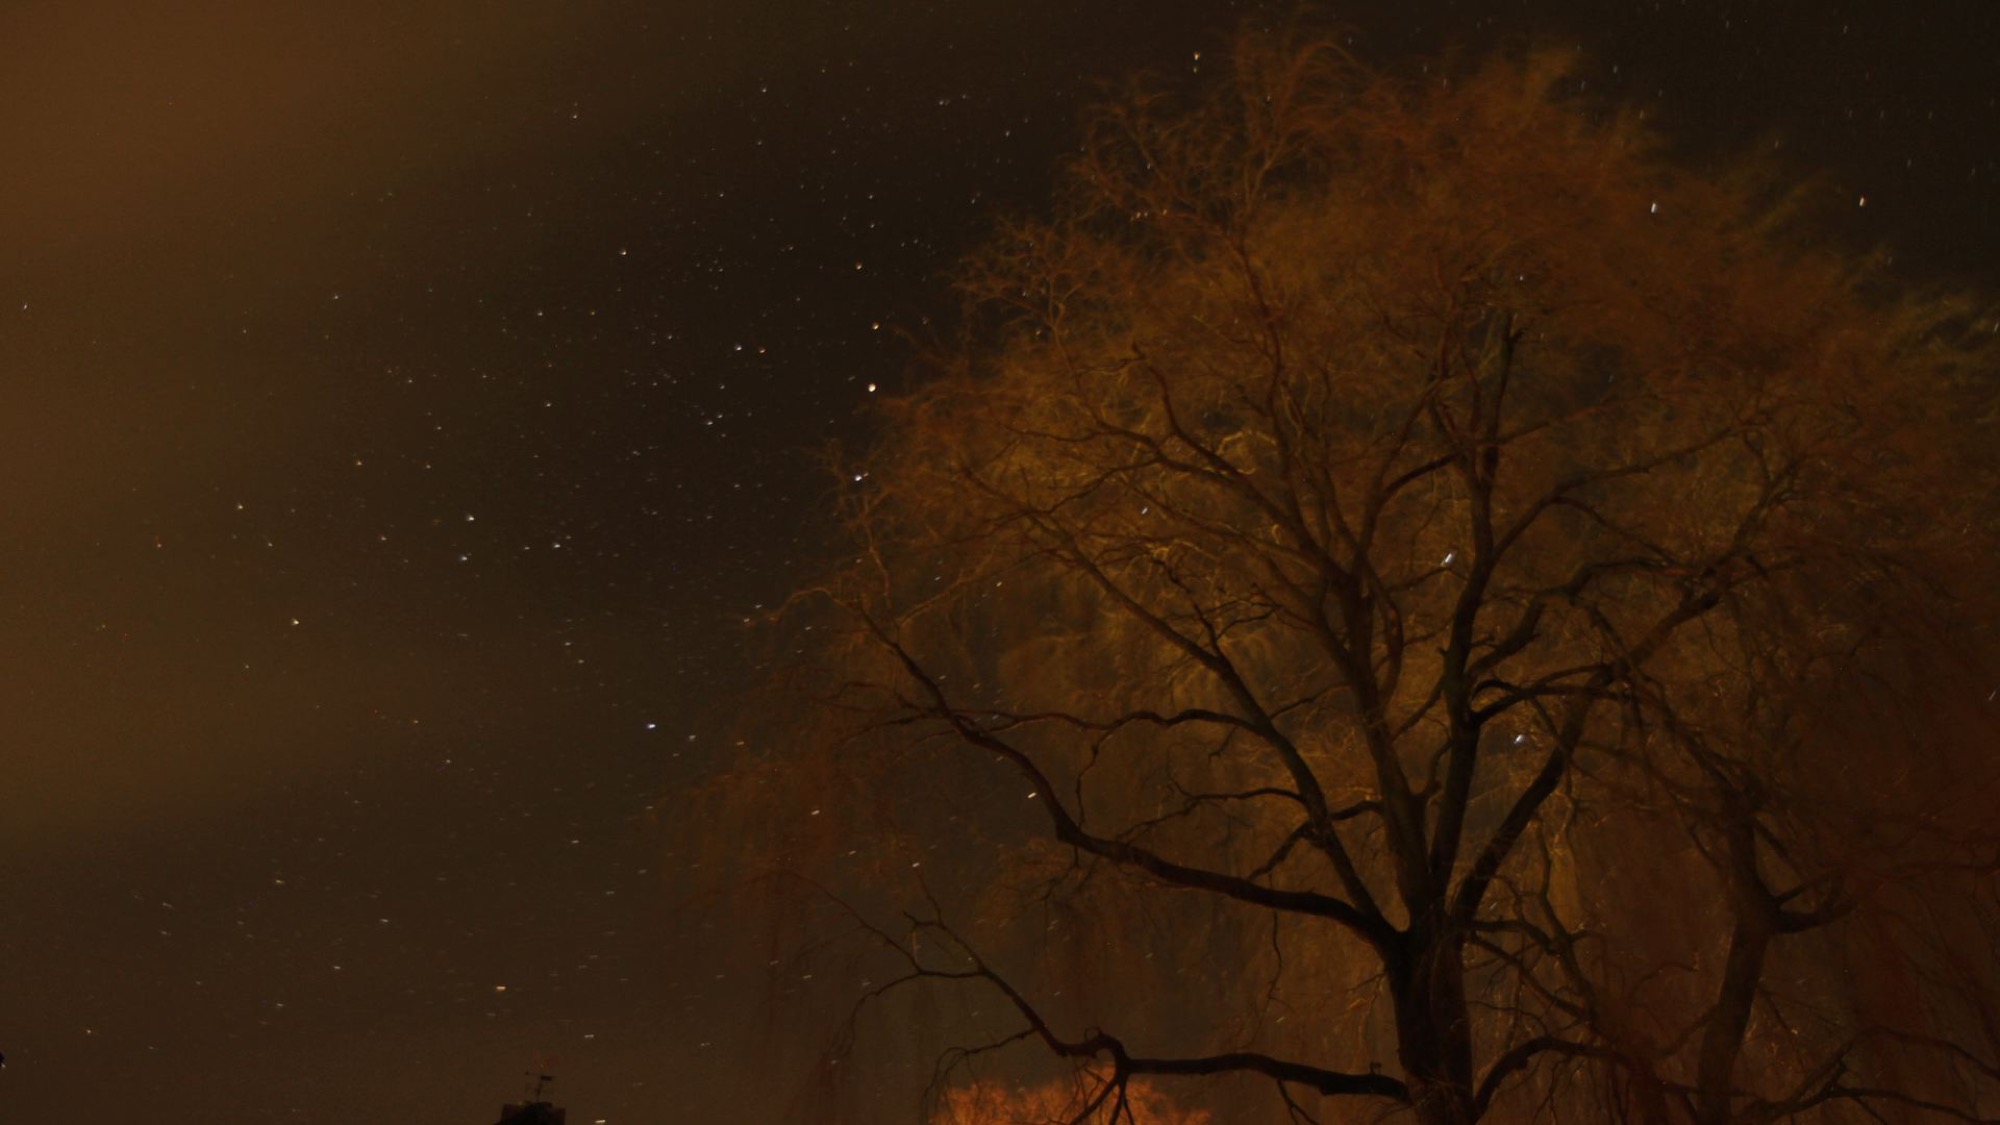  night-sky-tree-photography-matthias-grunsky 